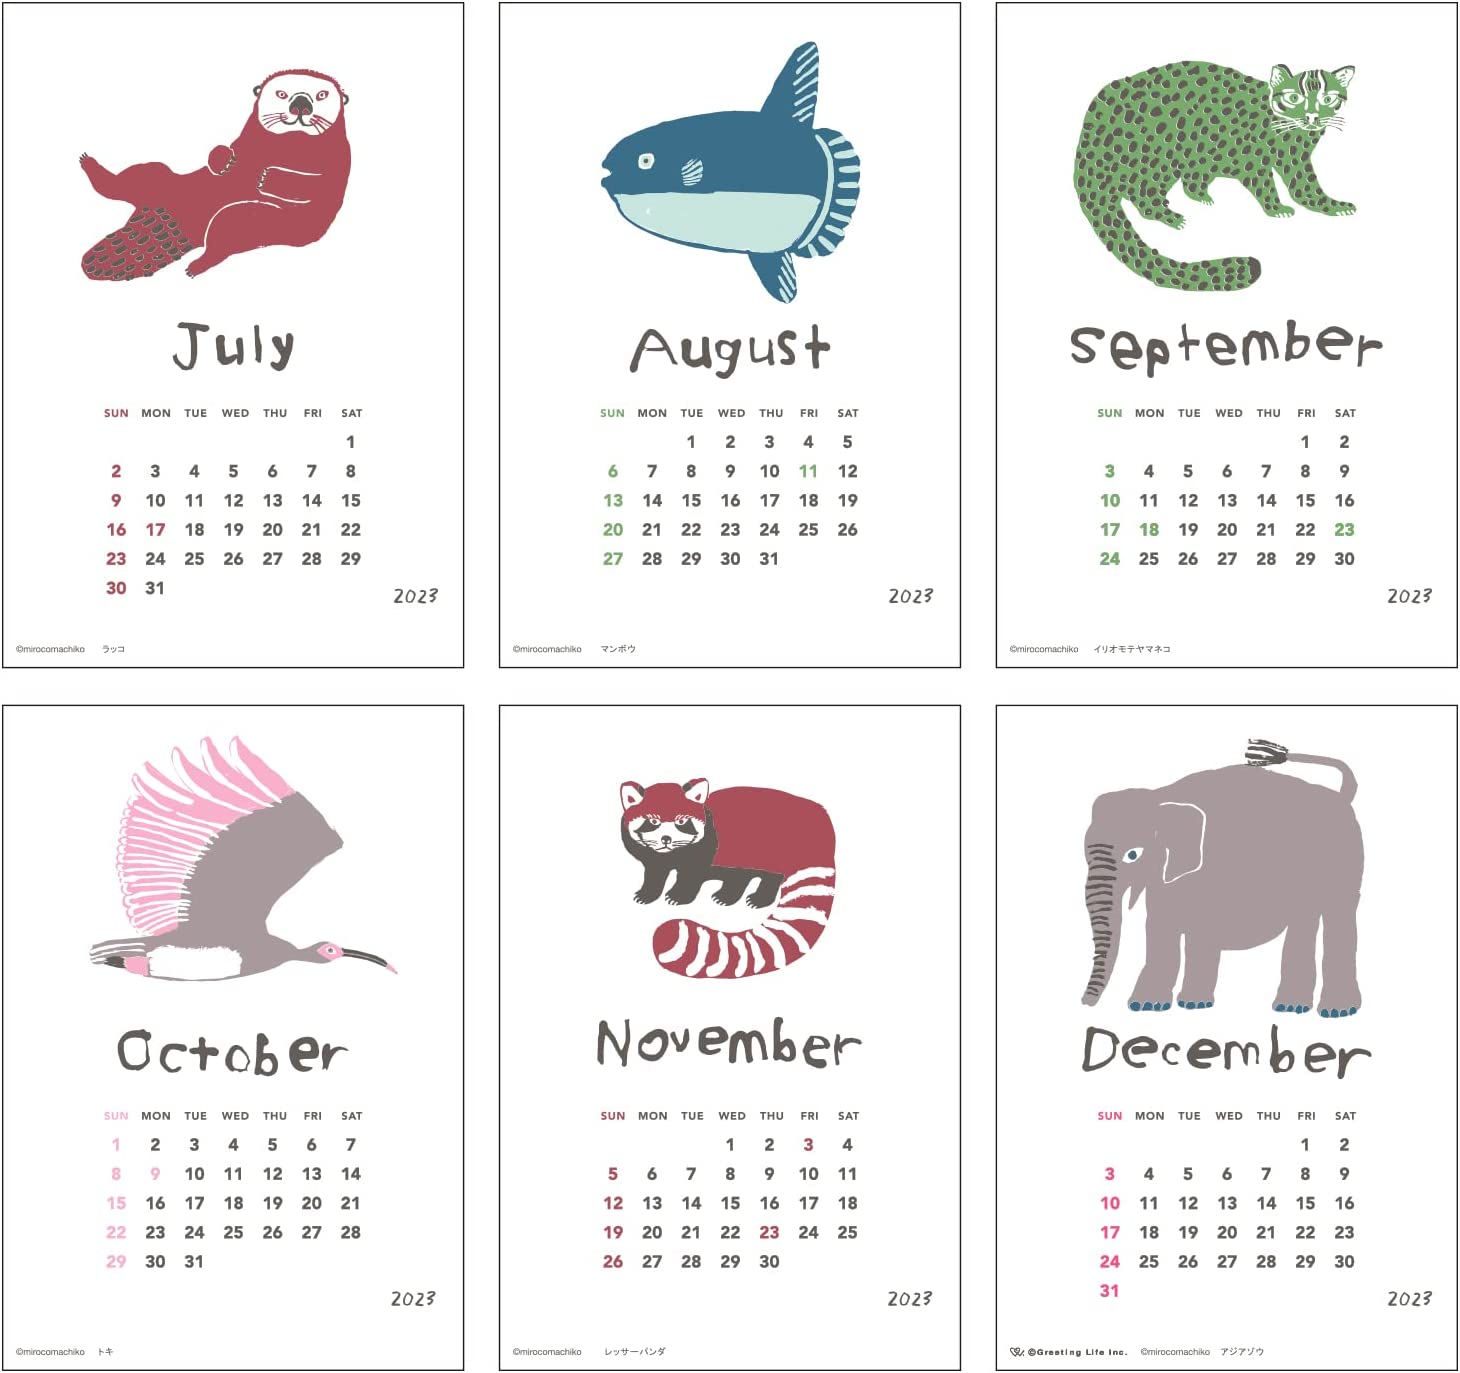 ミロコマチコが描く動物たちを活版印刷で生き生きと表現した、おしゃれな卓上カレンダー2023年版